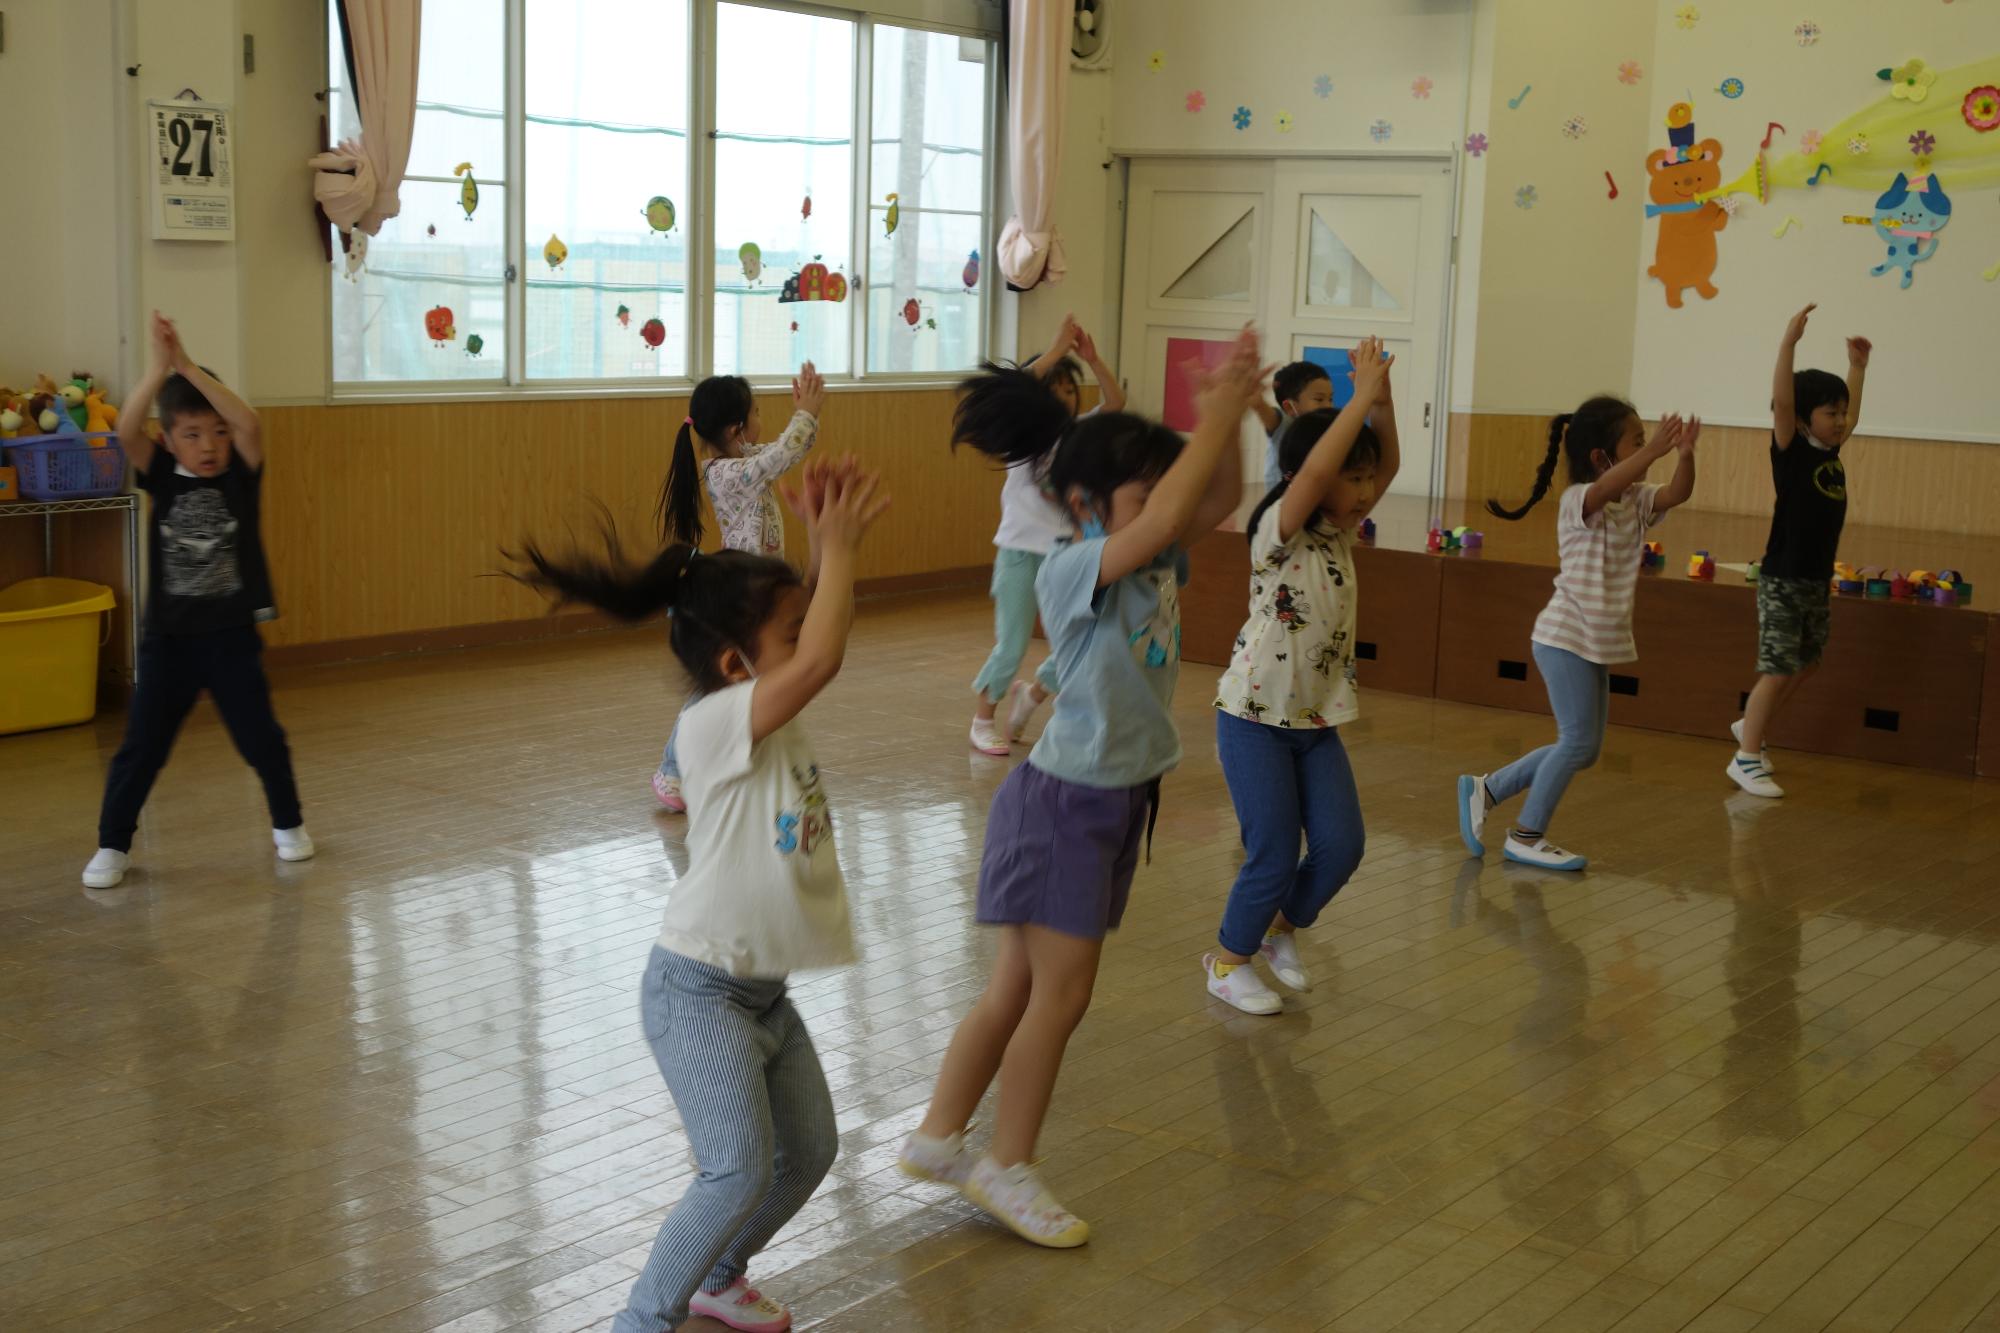 教室内を2列に並び間隔をあけて広がっている園児たちが、両手を上に挙げて踊っている様子の写真